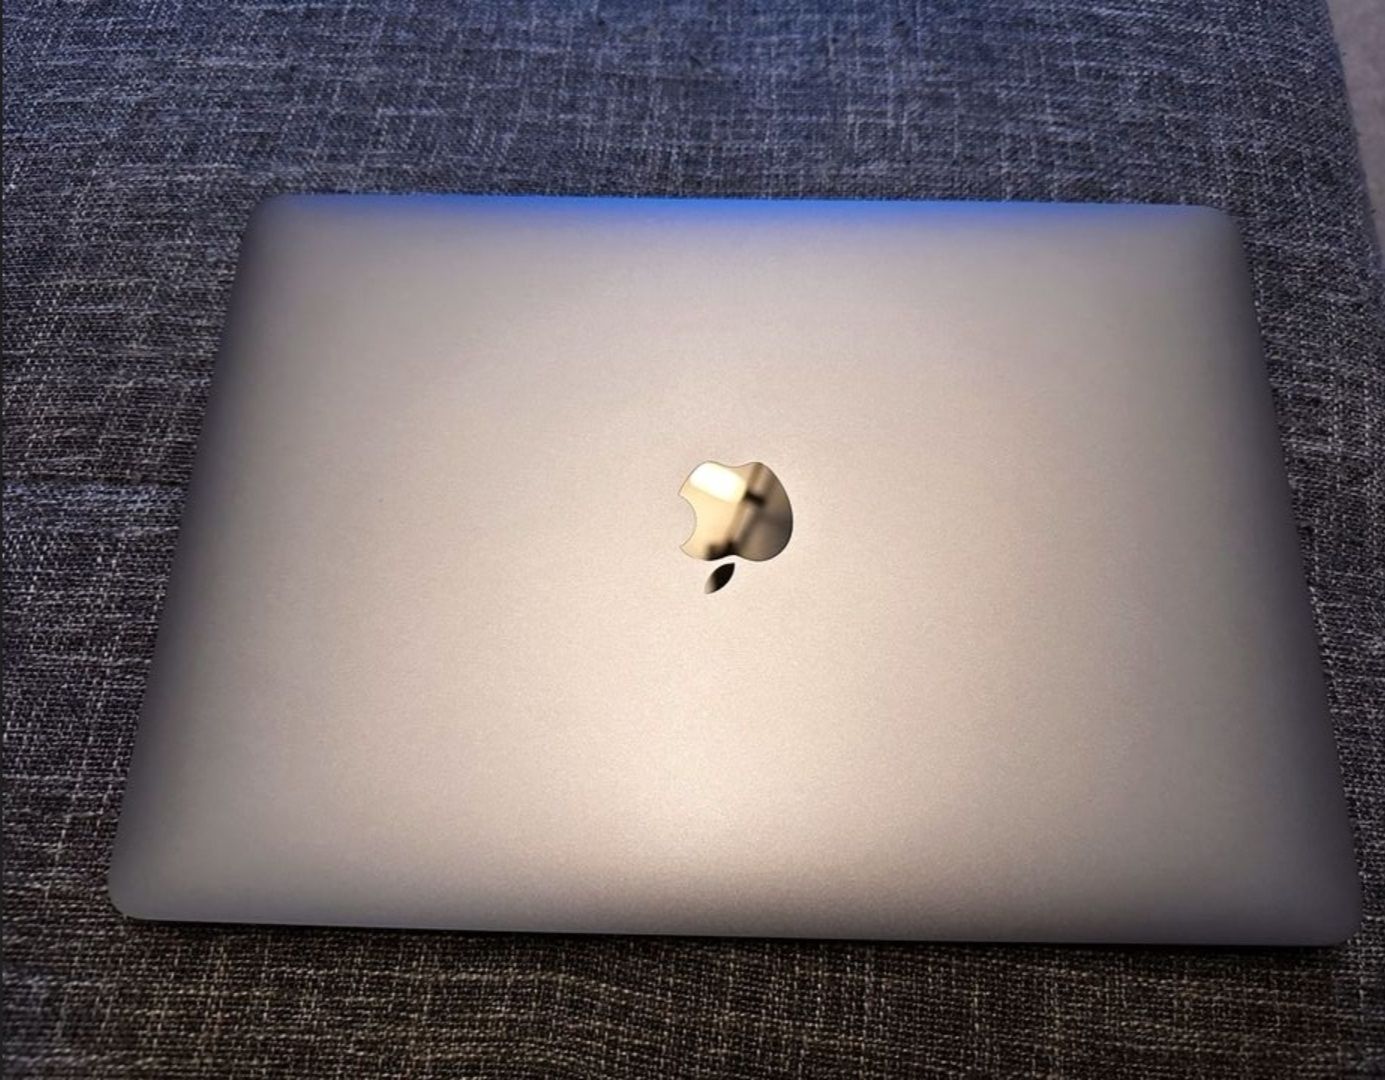 MacBook Pro 13" intel i7